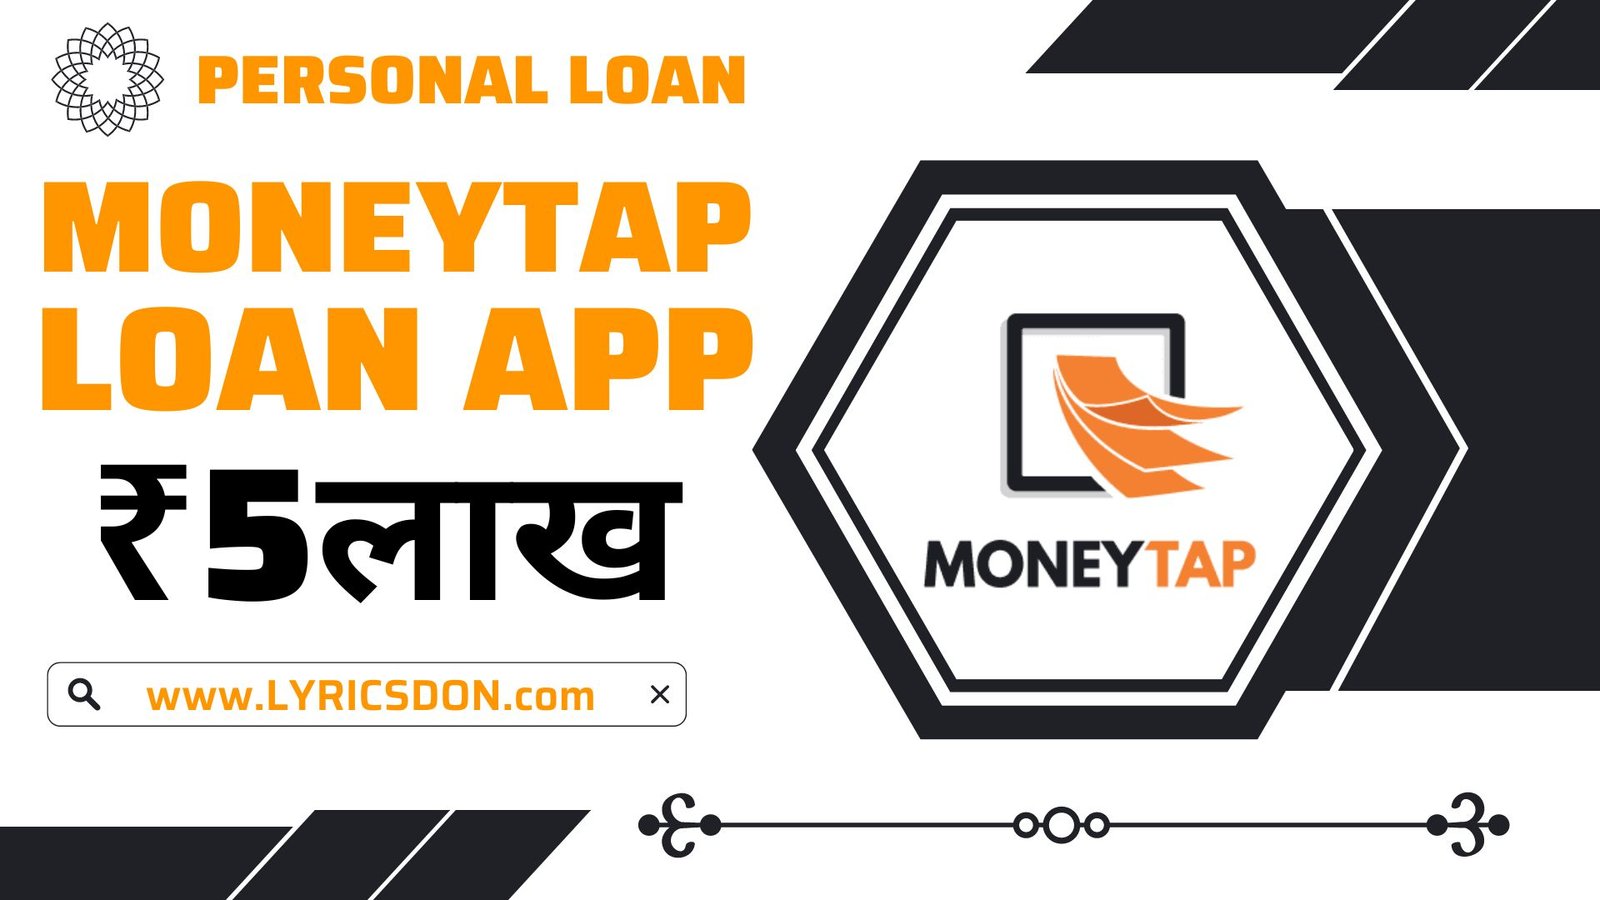 MoneyTap Loan App Loan Amount    